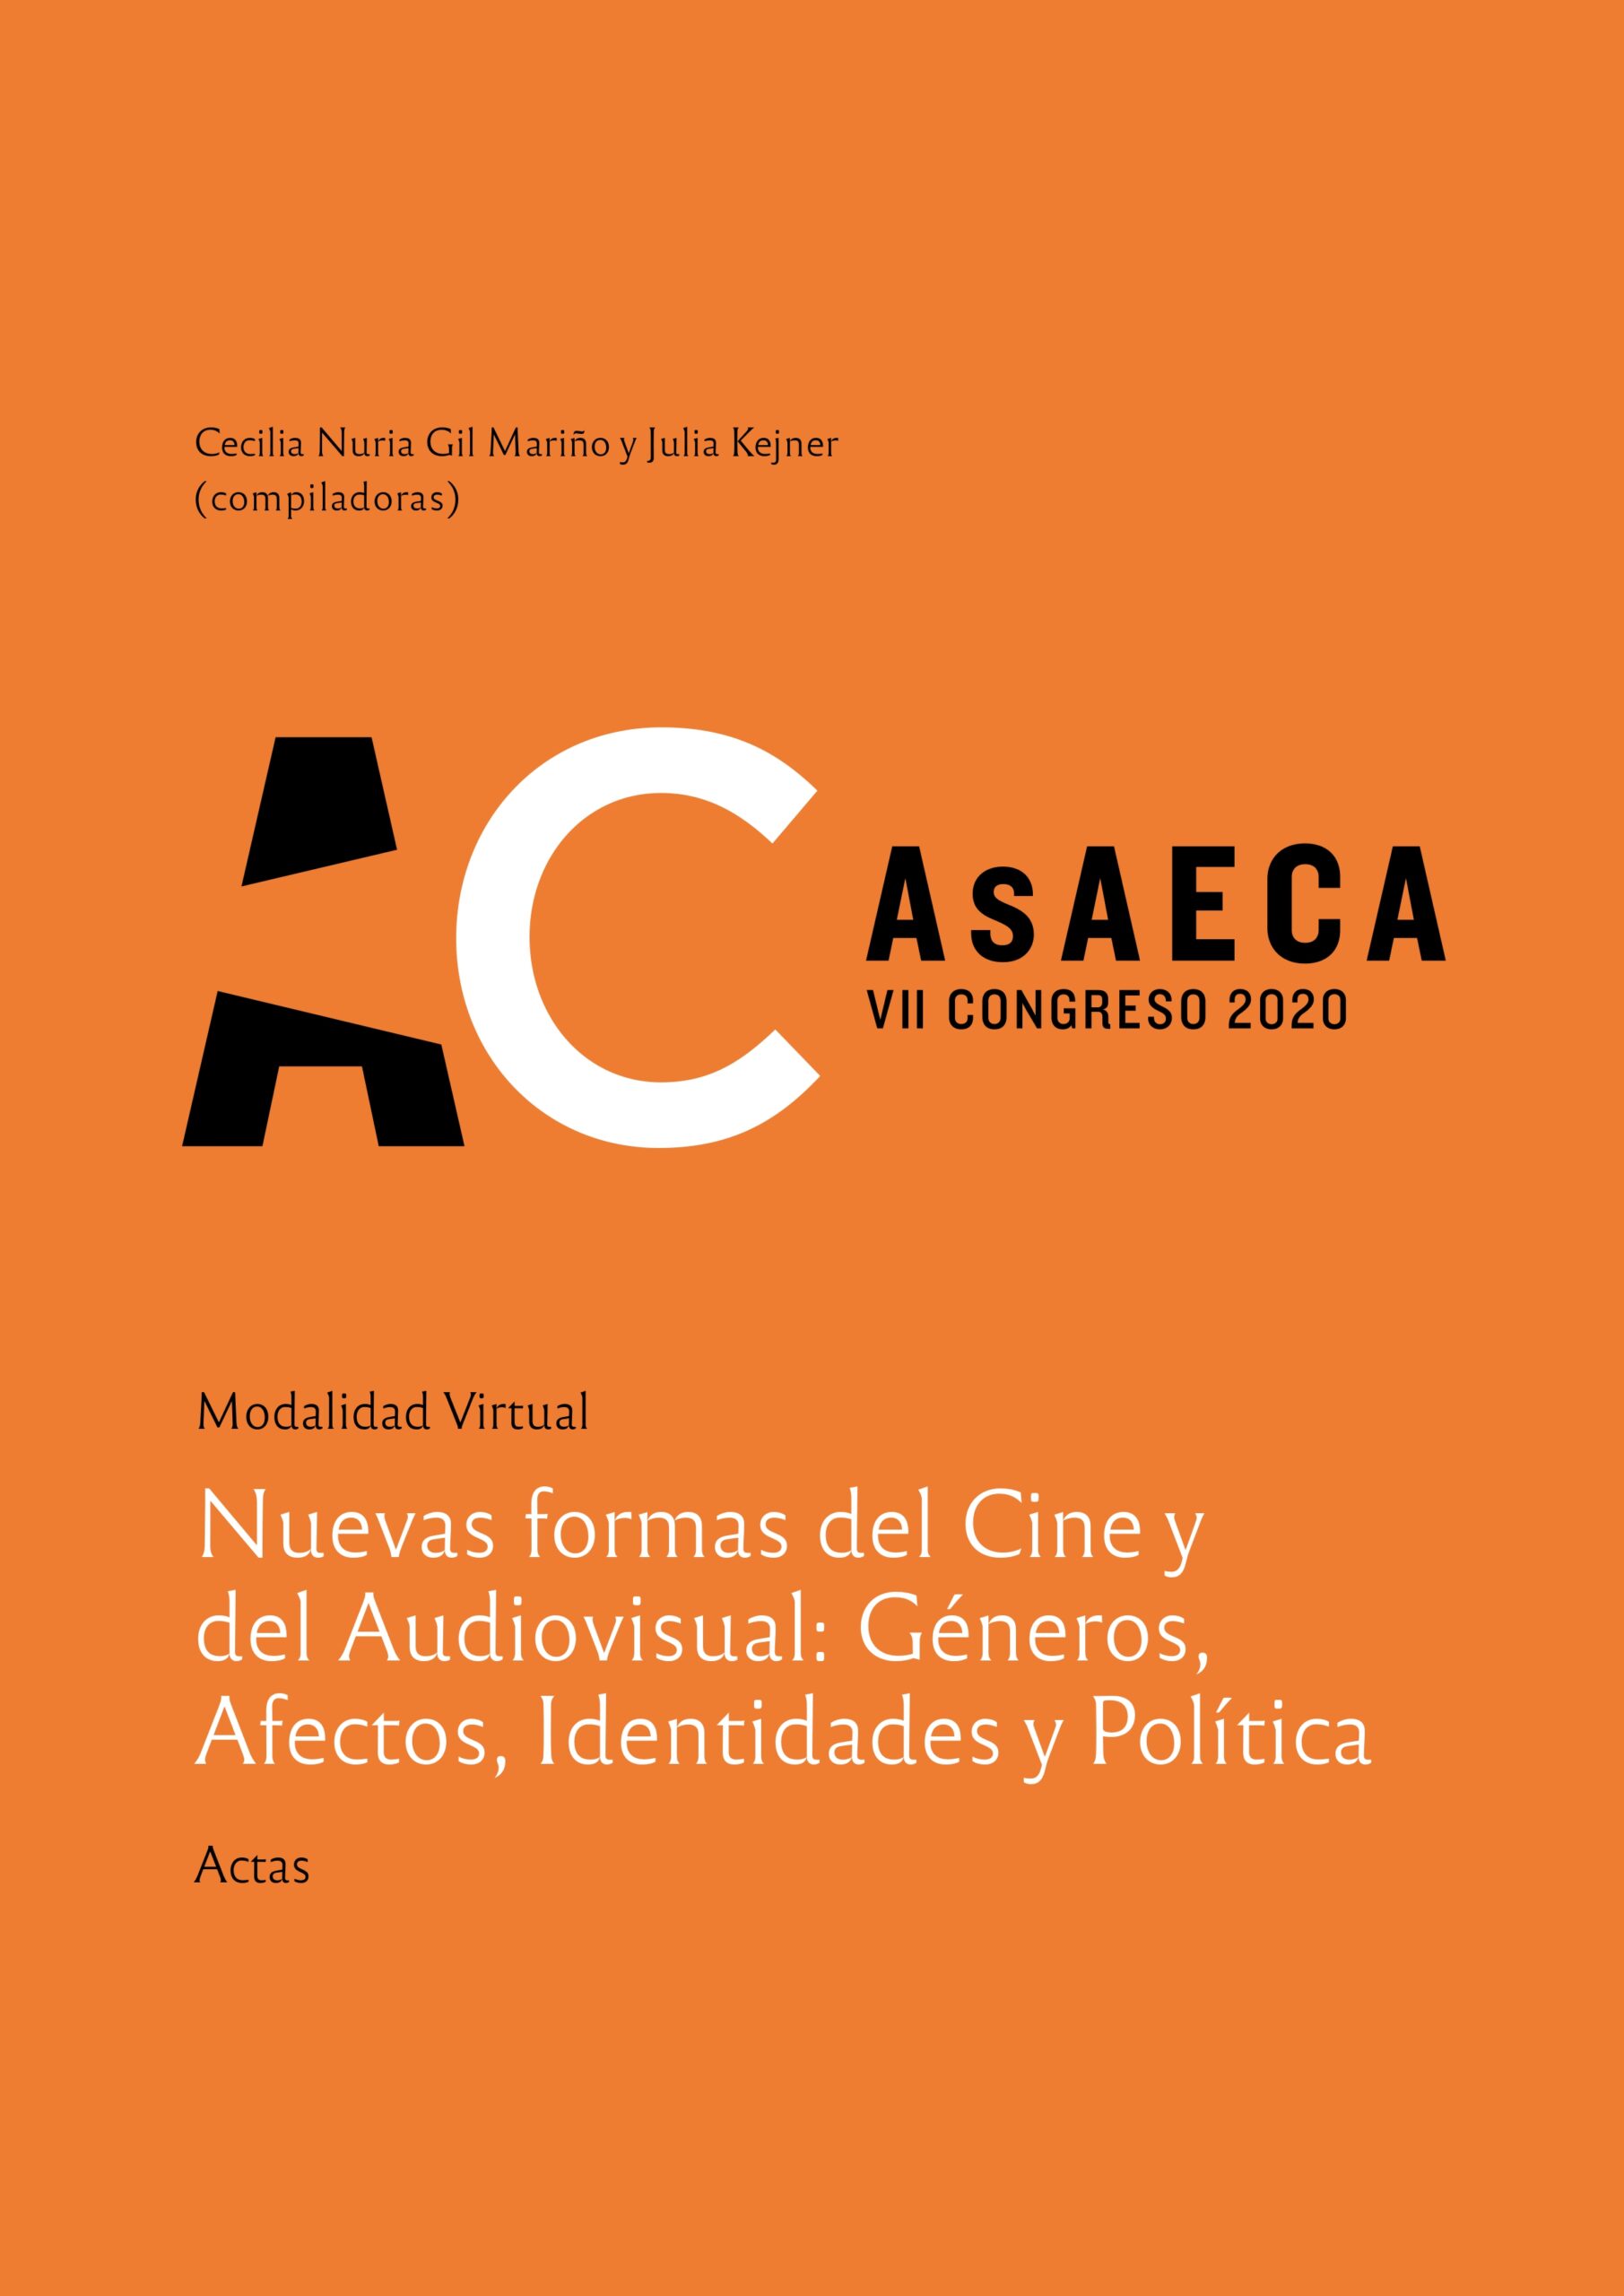 VII Congreso Internacional AsAECA. Nuevas formas del Cine y del Audiovisual: Géneros, Afectos, Identidades y Política